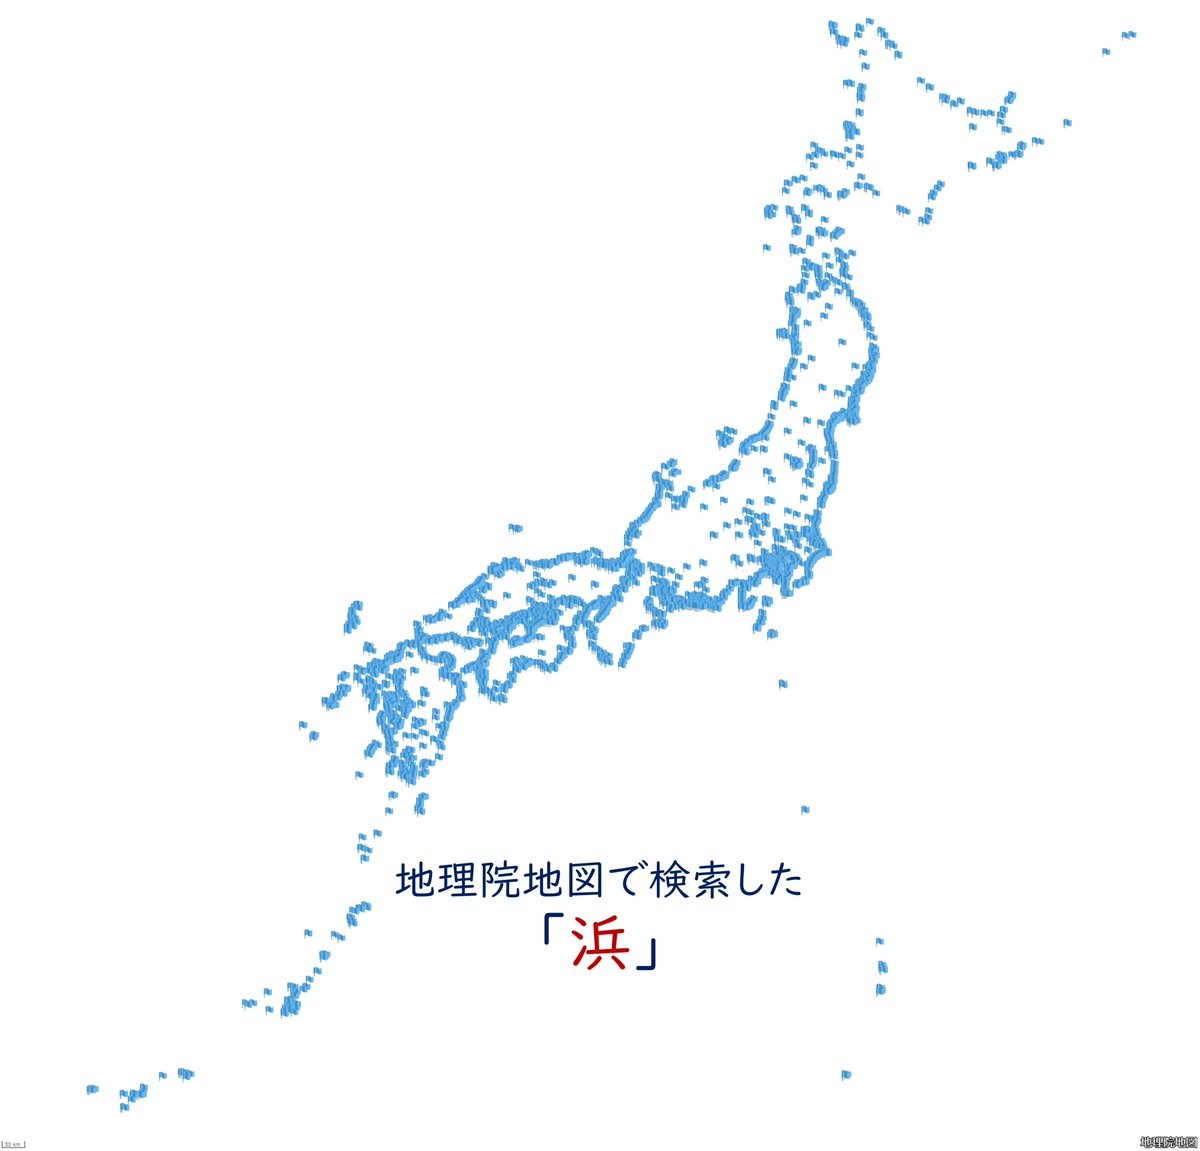 今日は地図の日なので、地理院地図で「浜」を検索した結果で描いた日本地図を貼っておきます。皆さん地図を楽しみましょう！